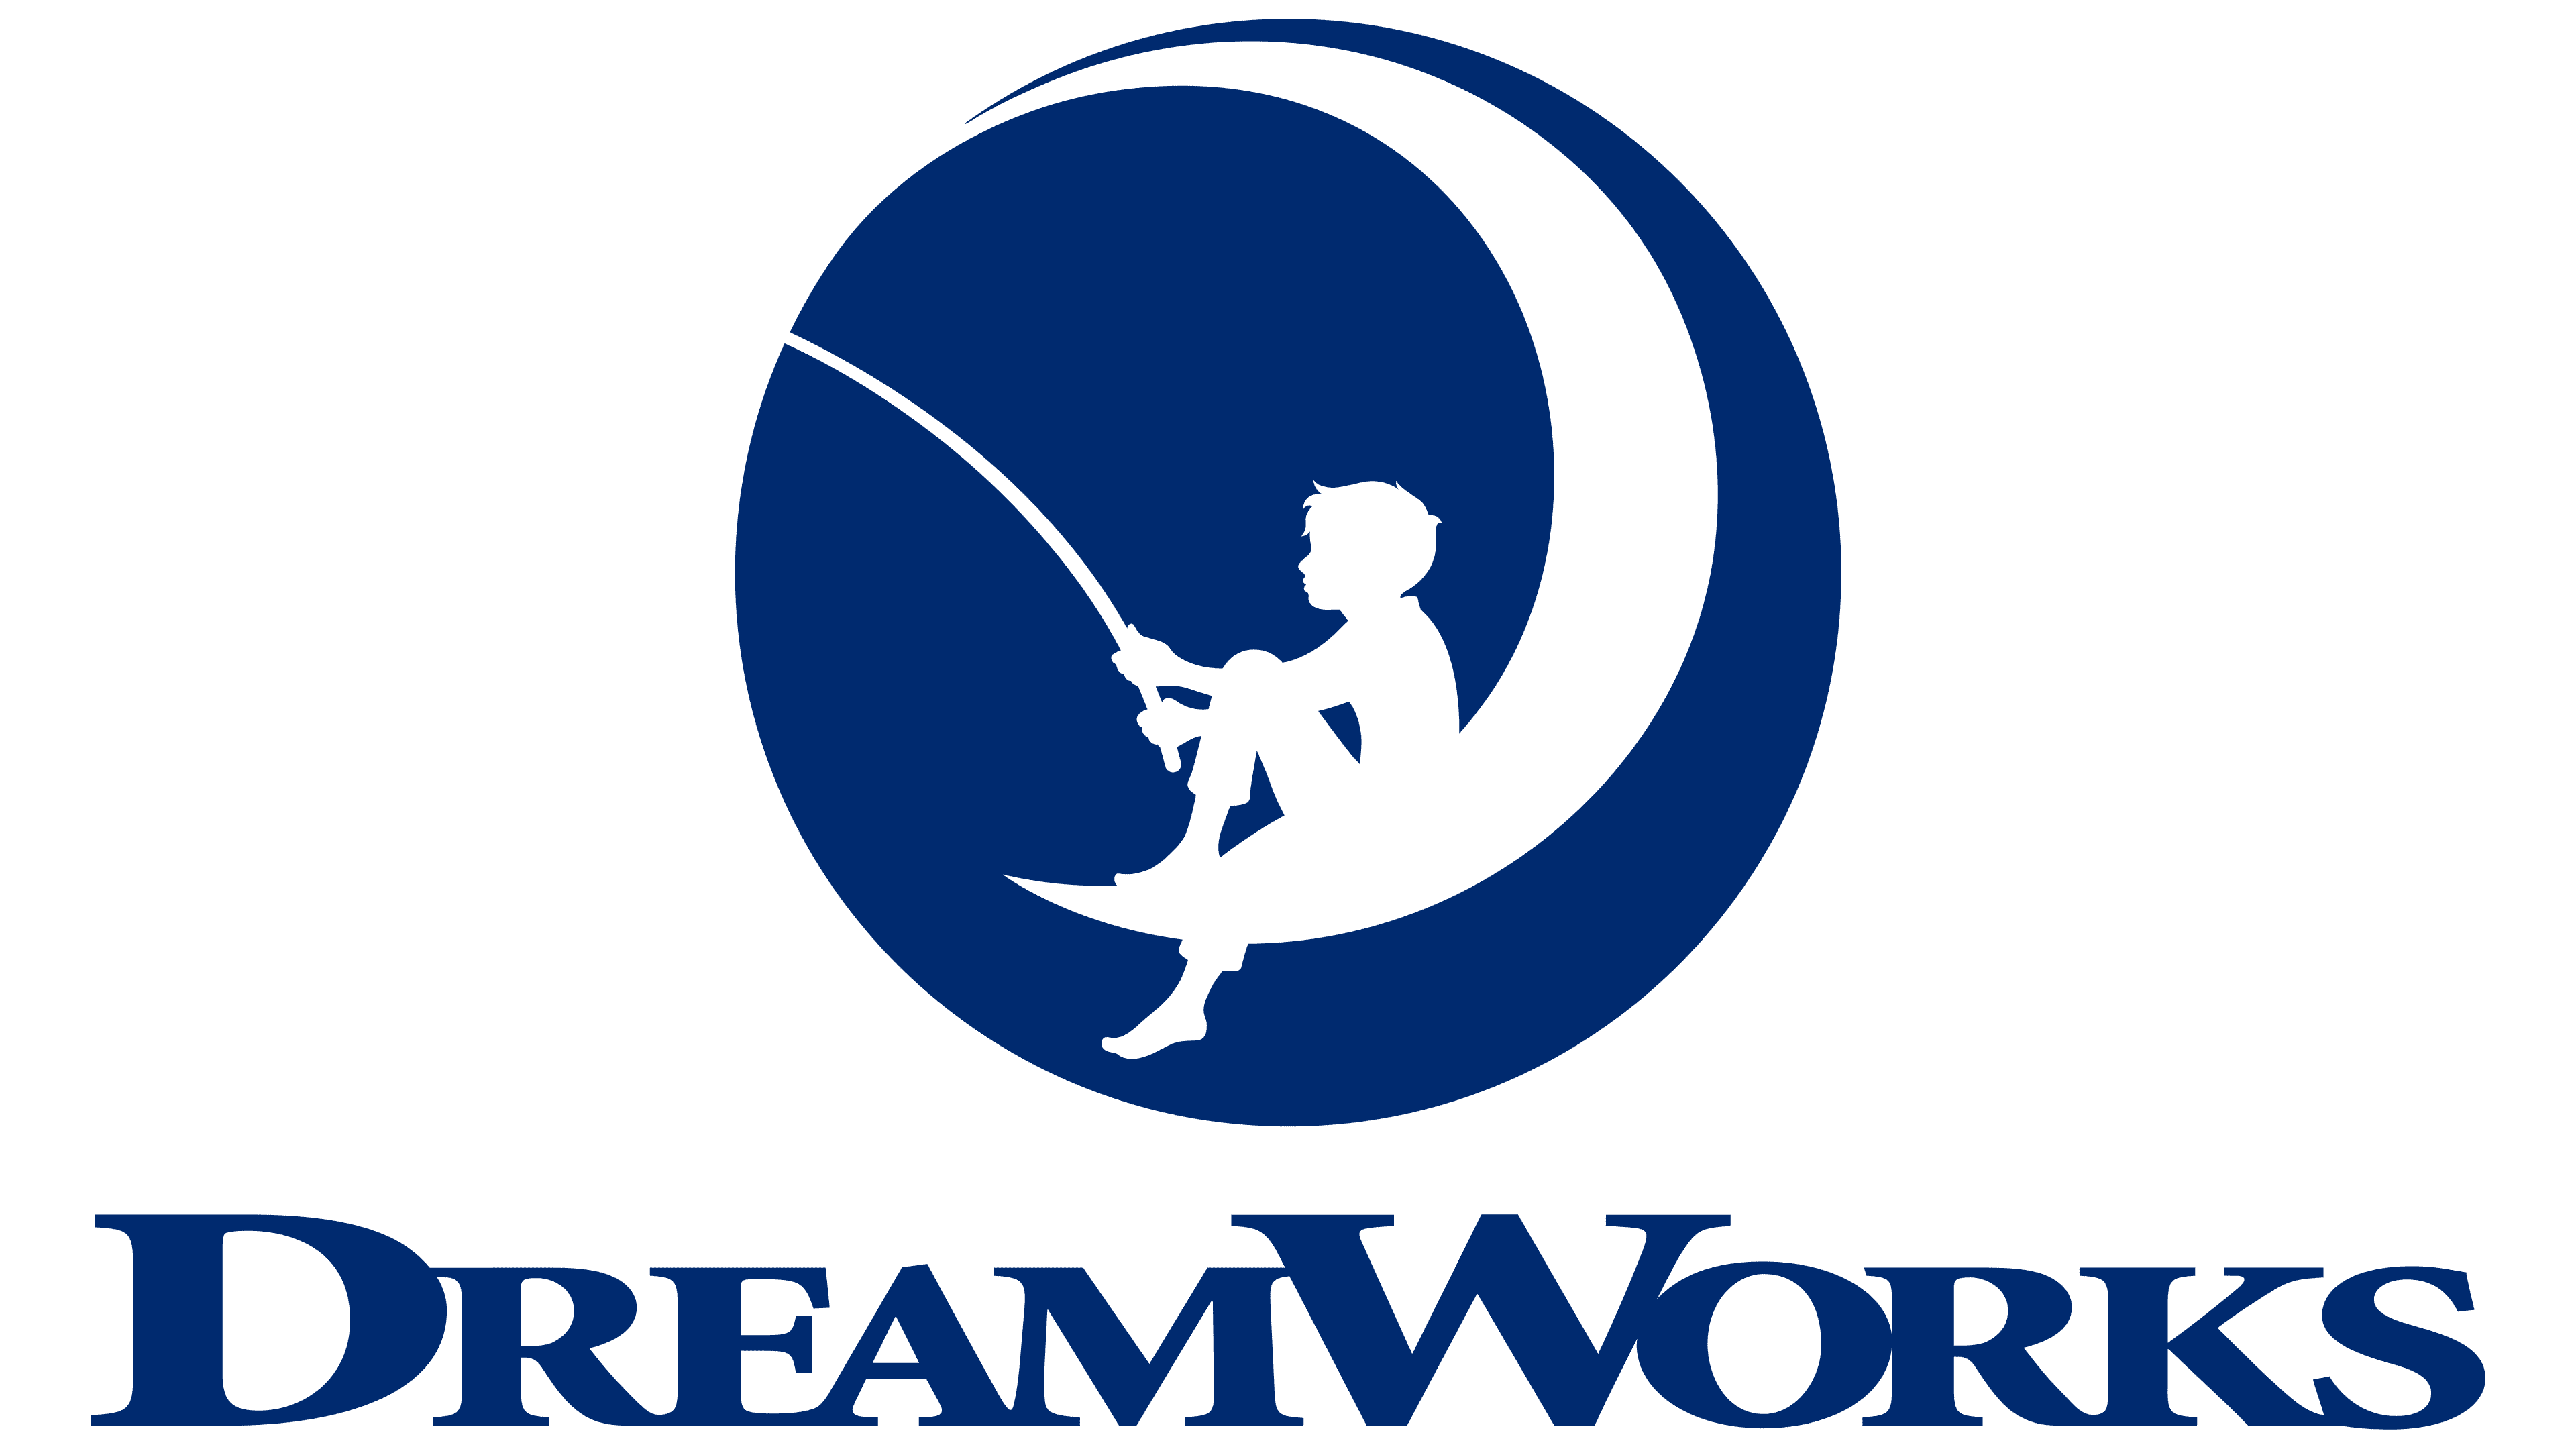 izzi distribuirá los canales Sony Movies y DreamWorks en México 